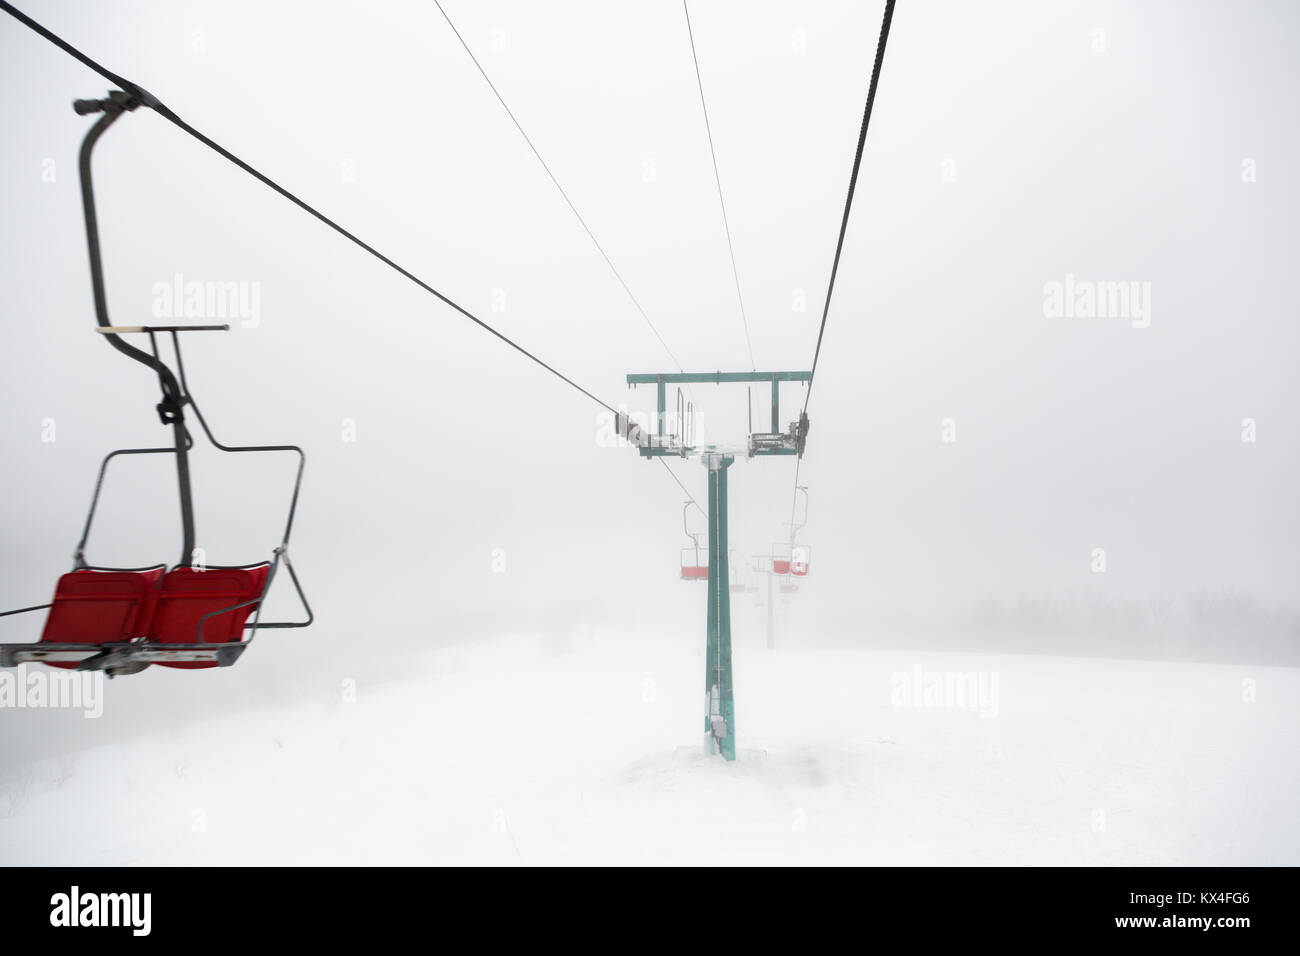 Ski-lift in fog Stock Photo